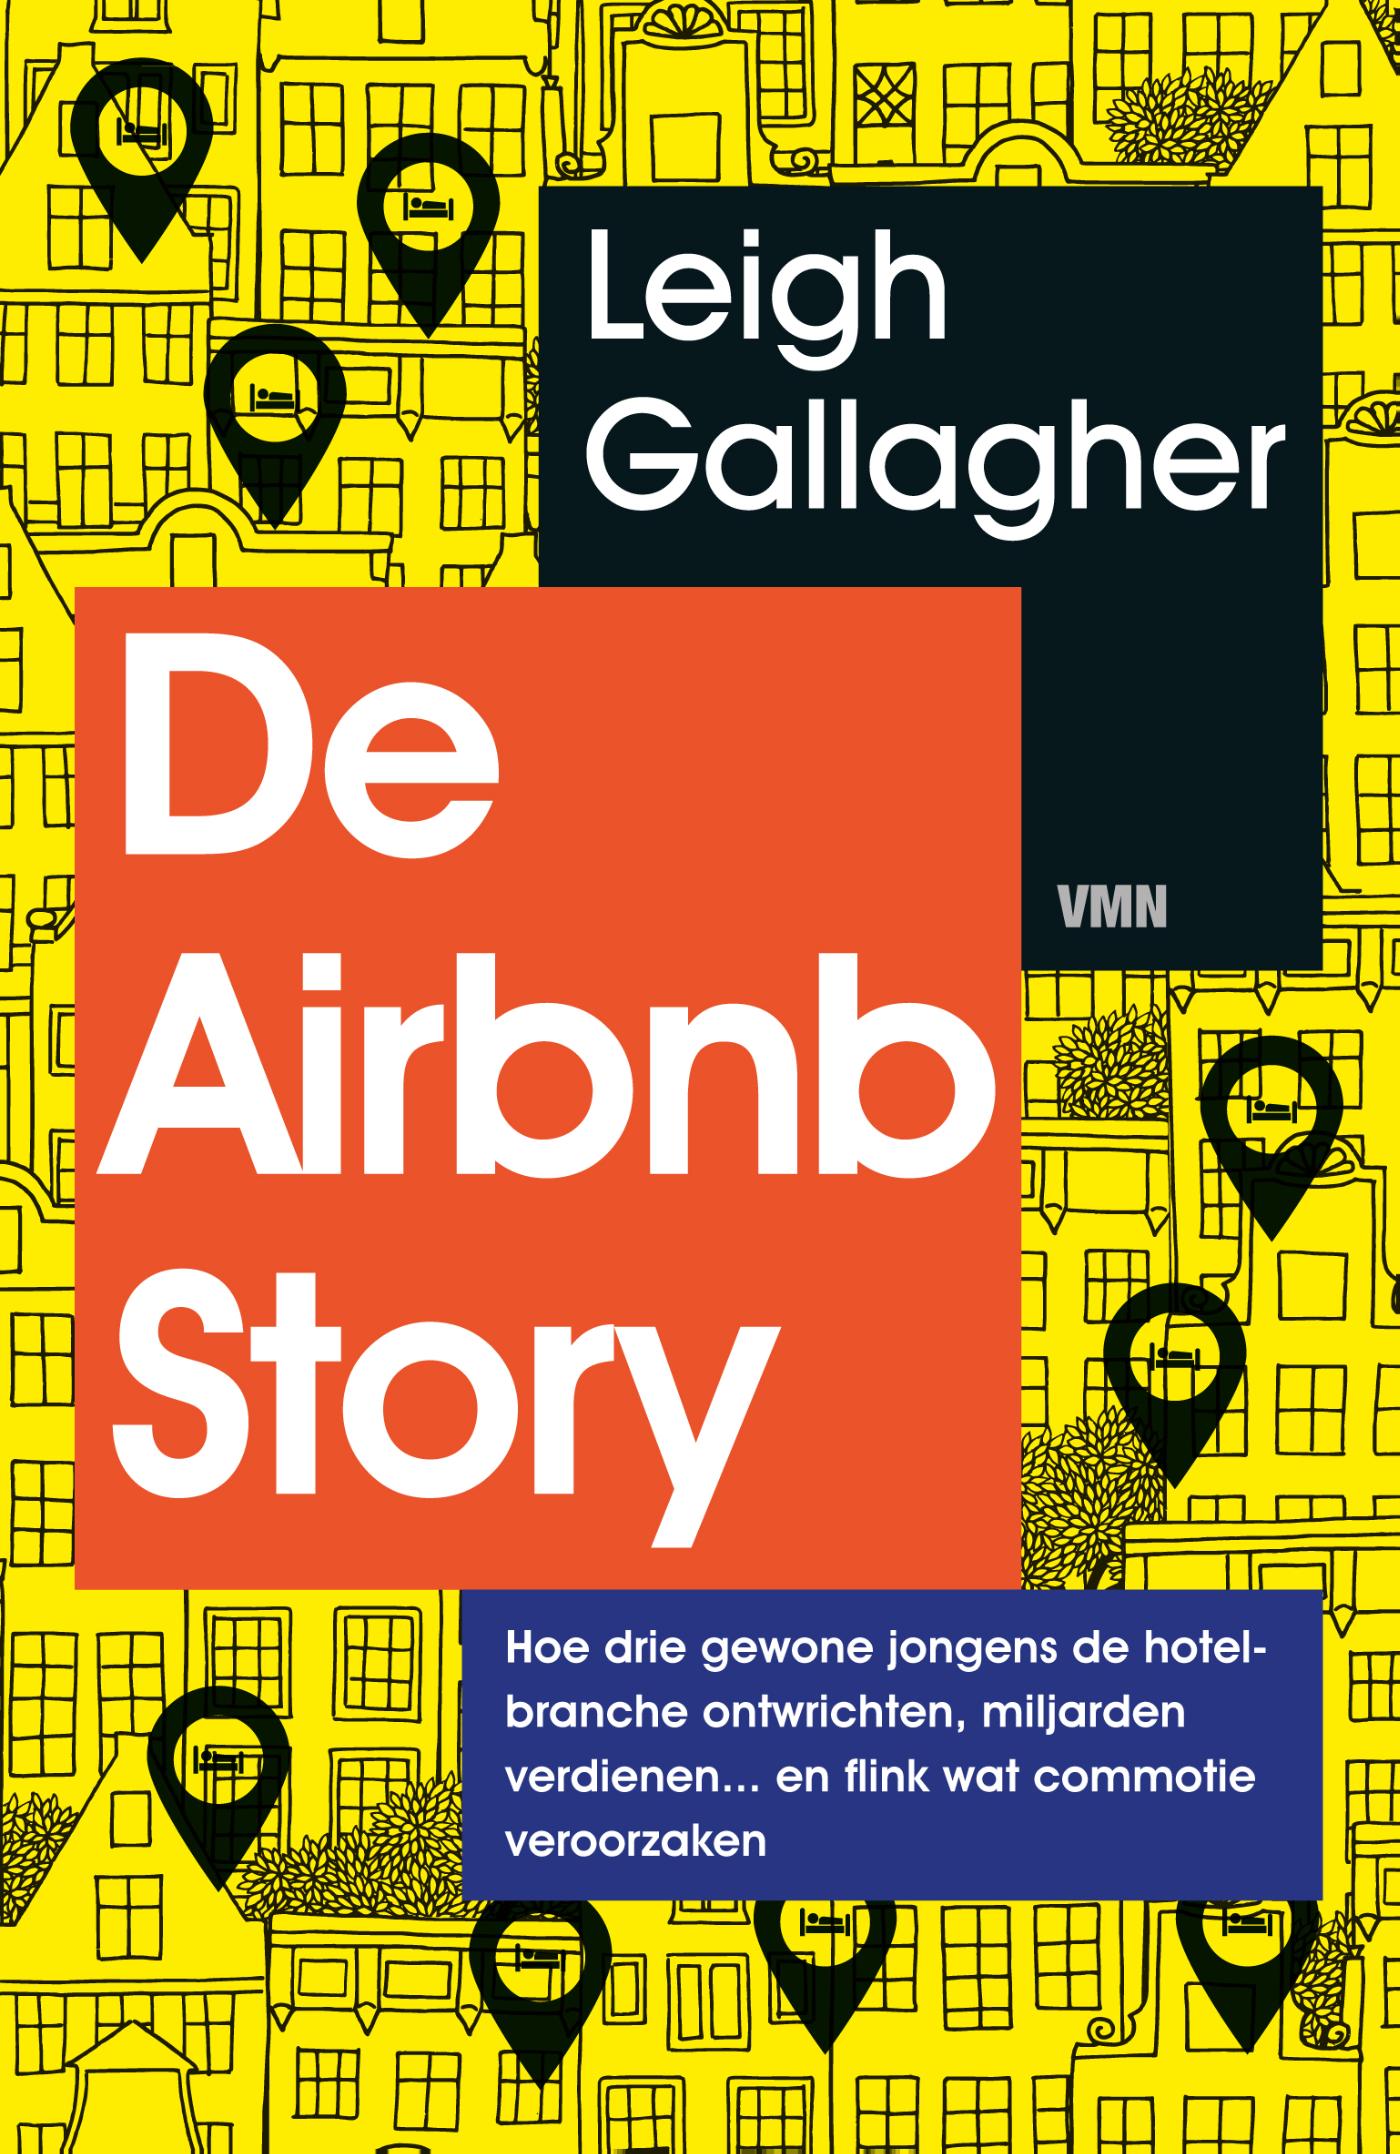 De Airbnb Story (Ebook)